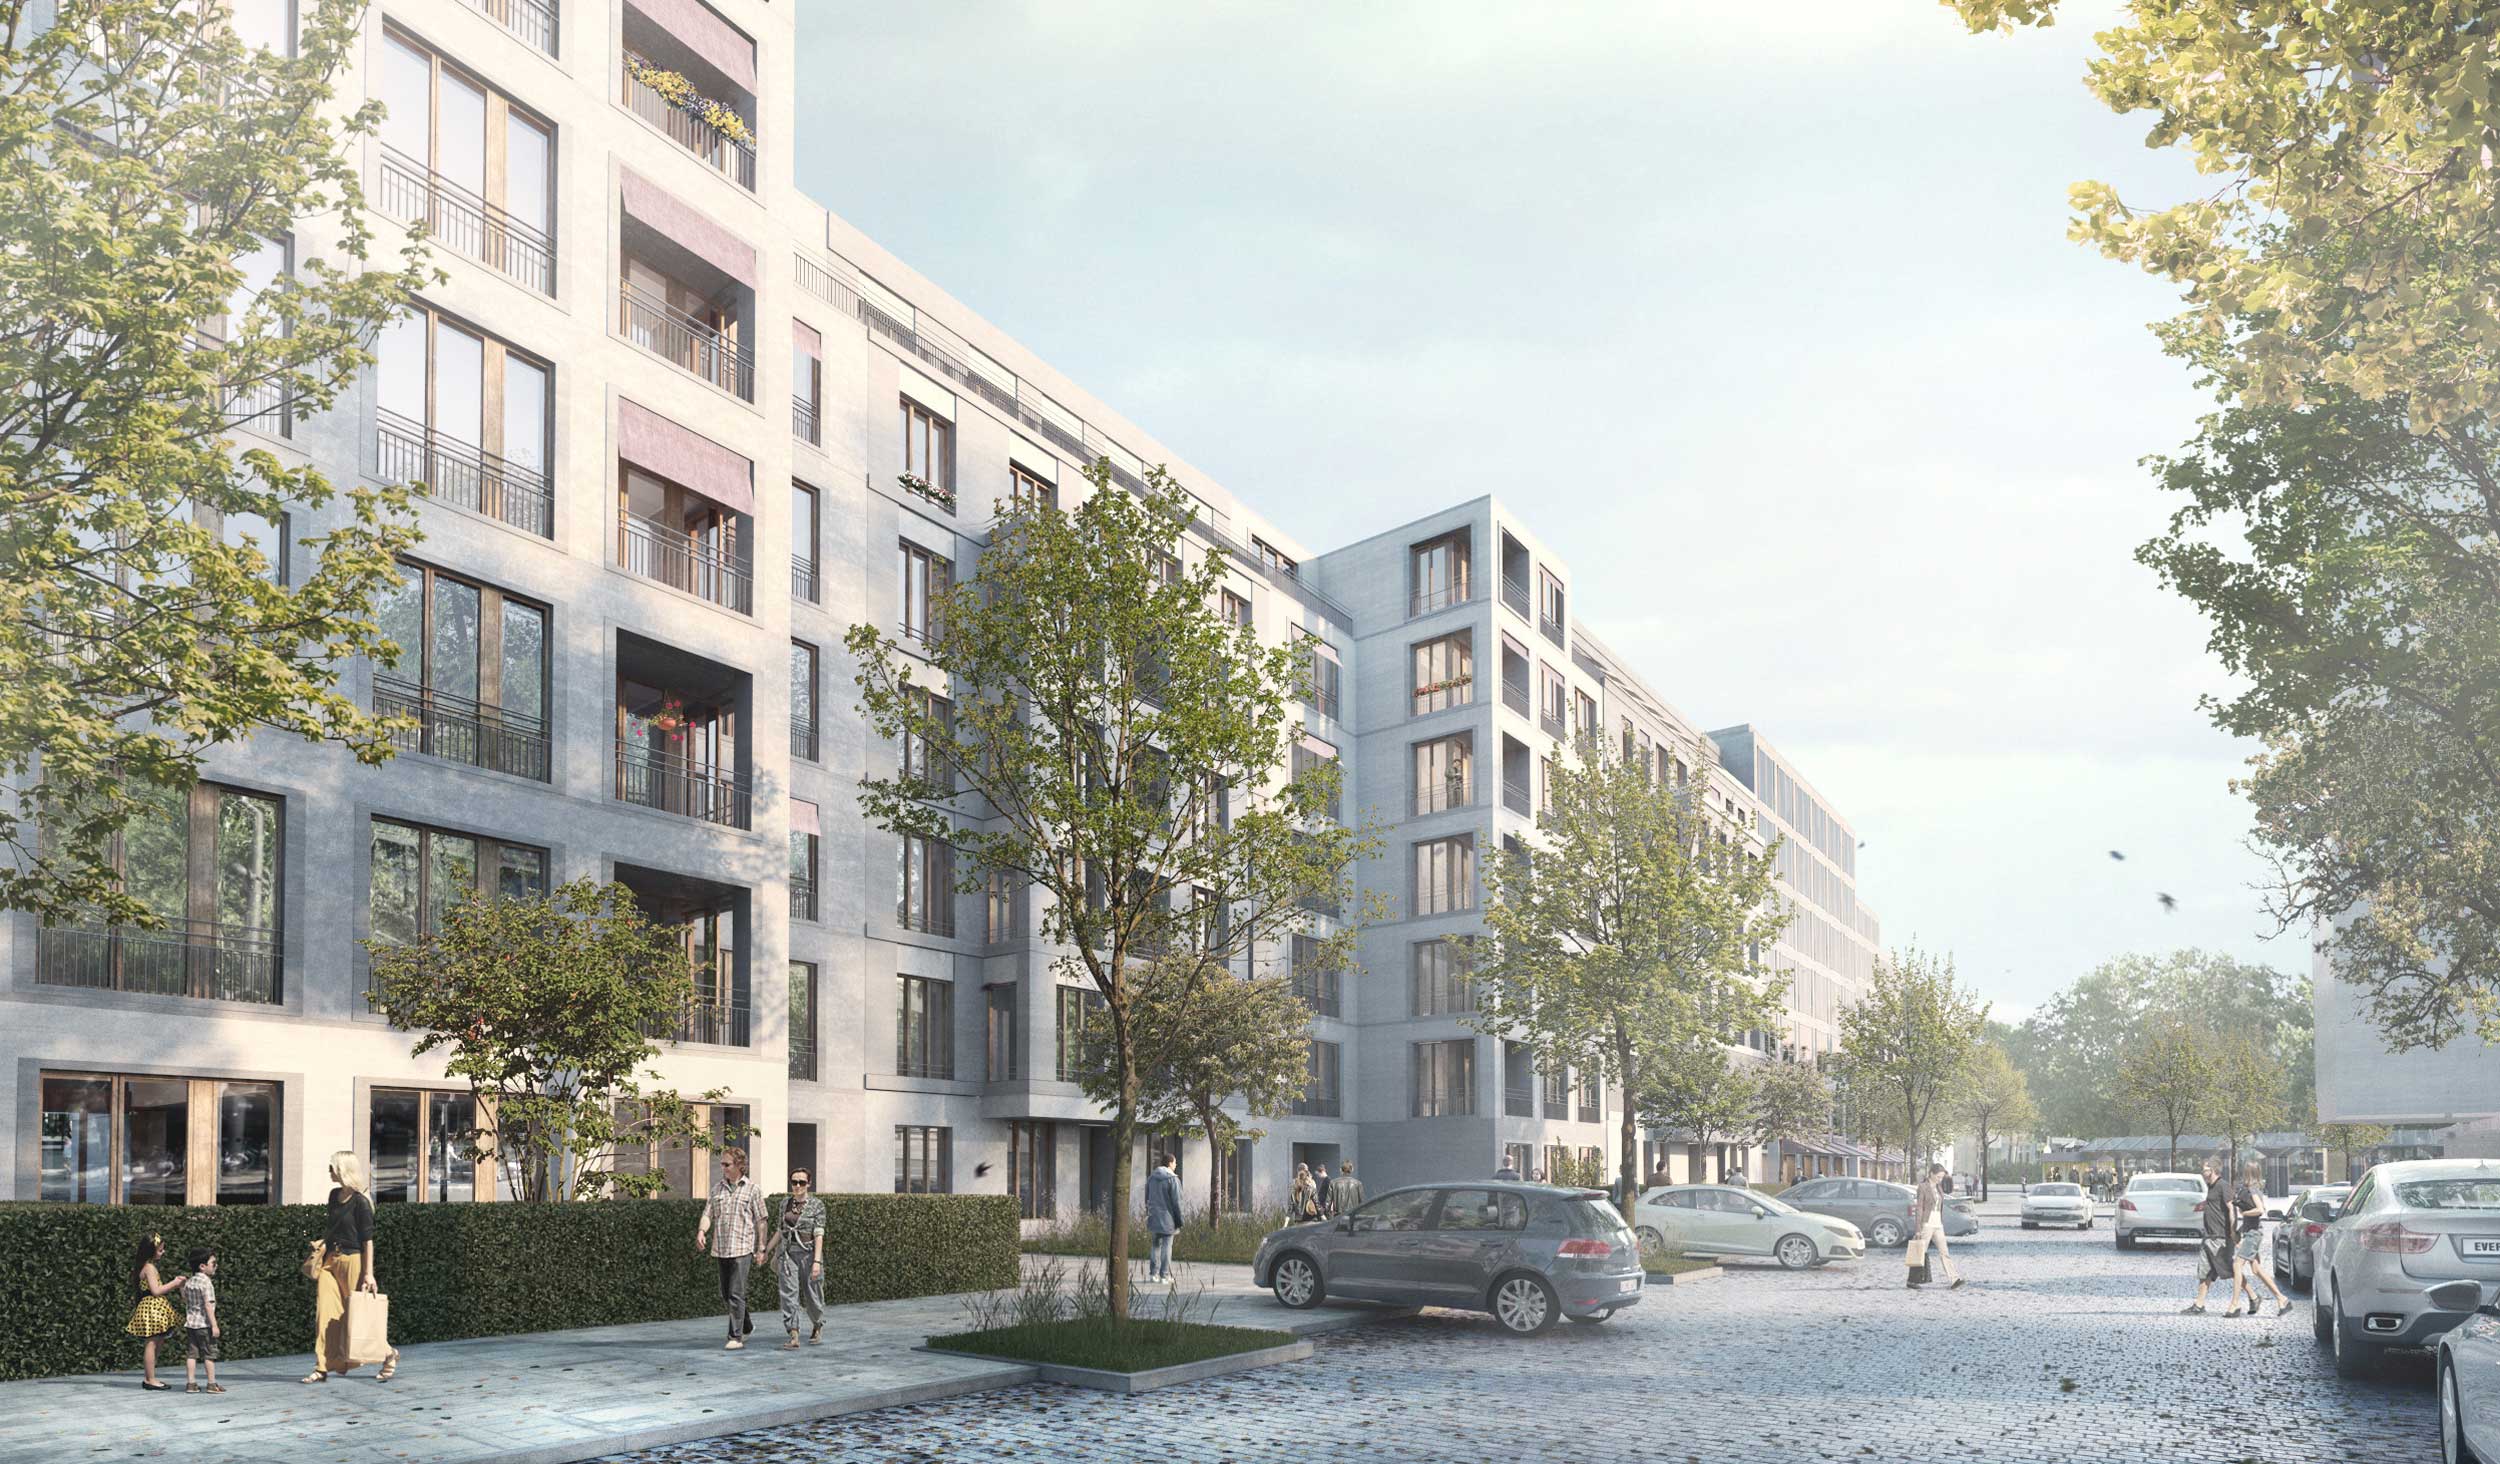 Wohnbebauung Seesener Straße in Berlin